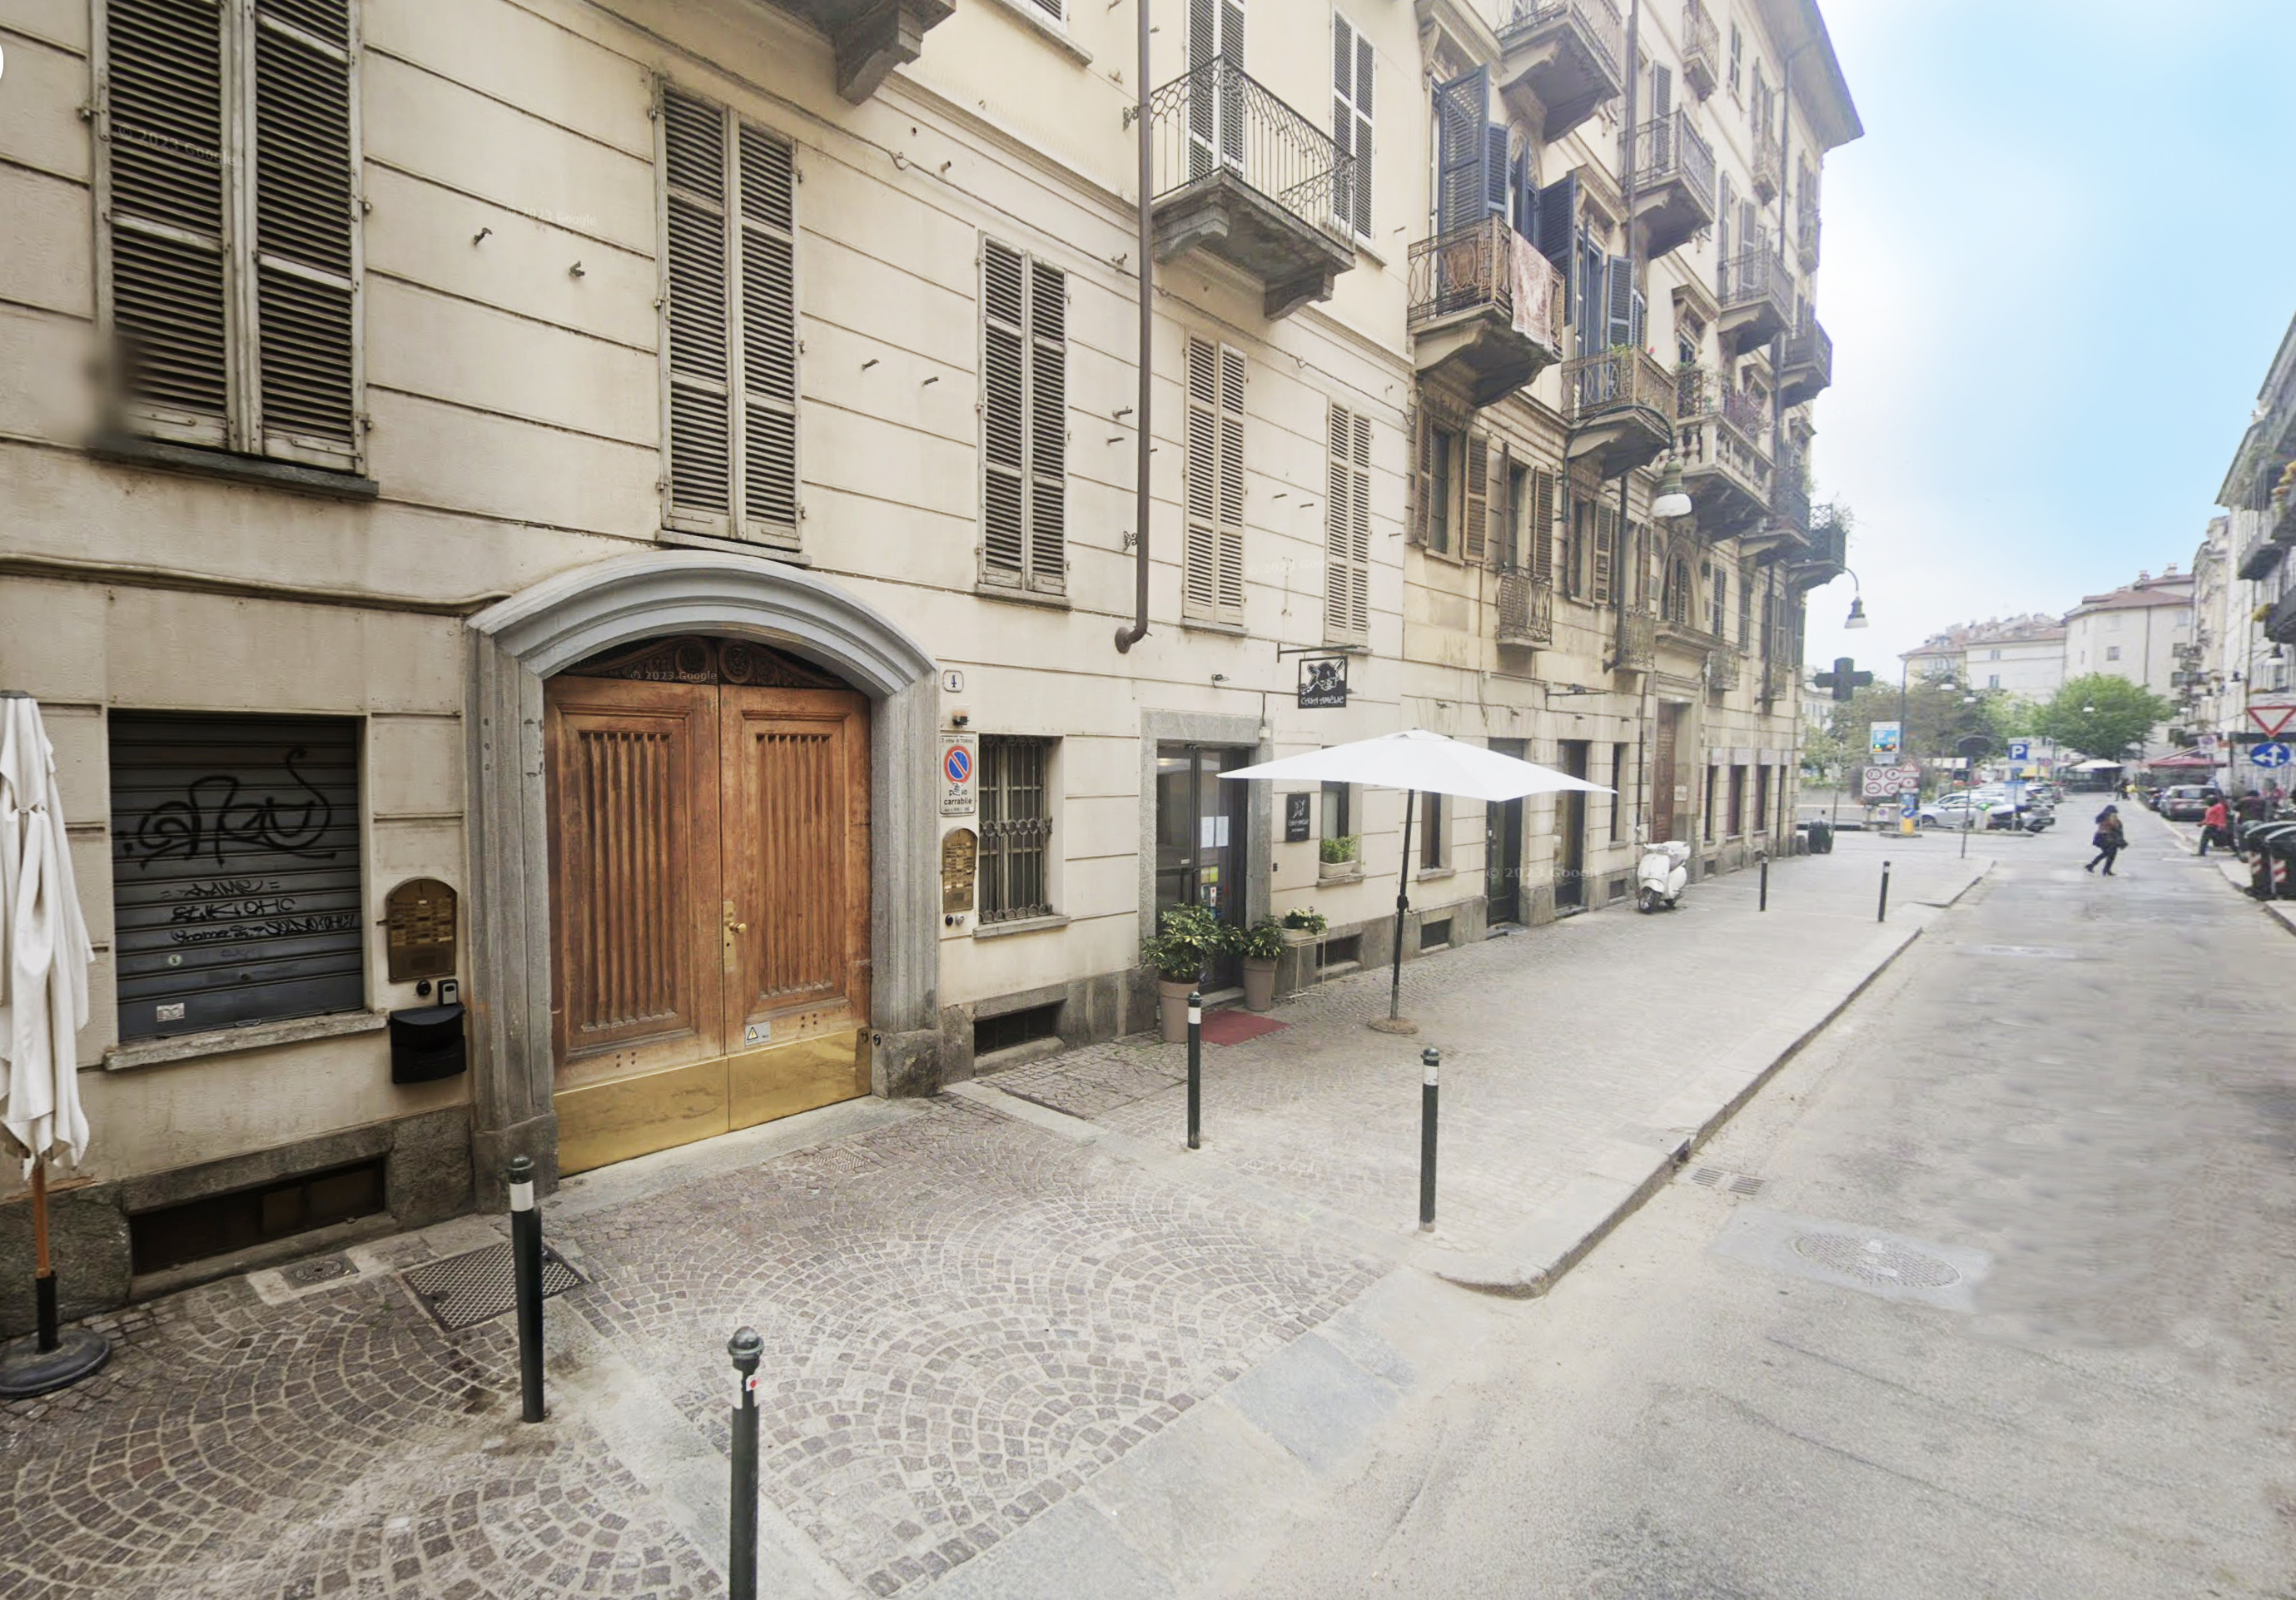 Grazioso appartamento in centro storico - Via Giulio, Torino